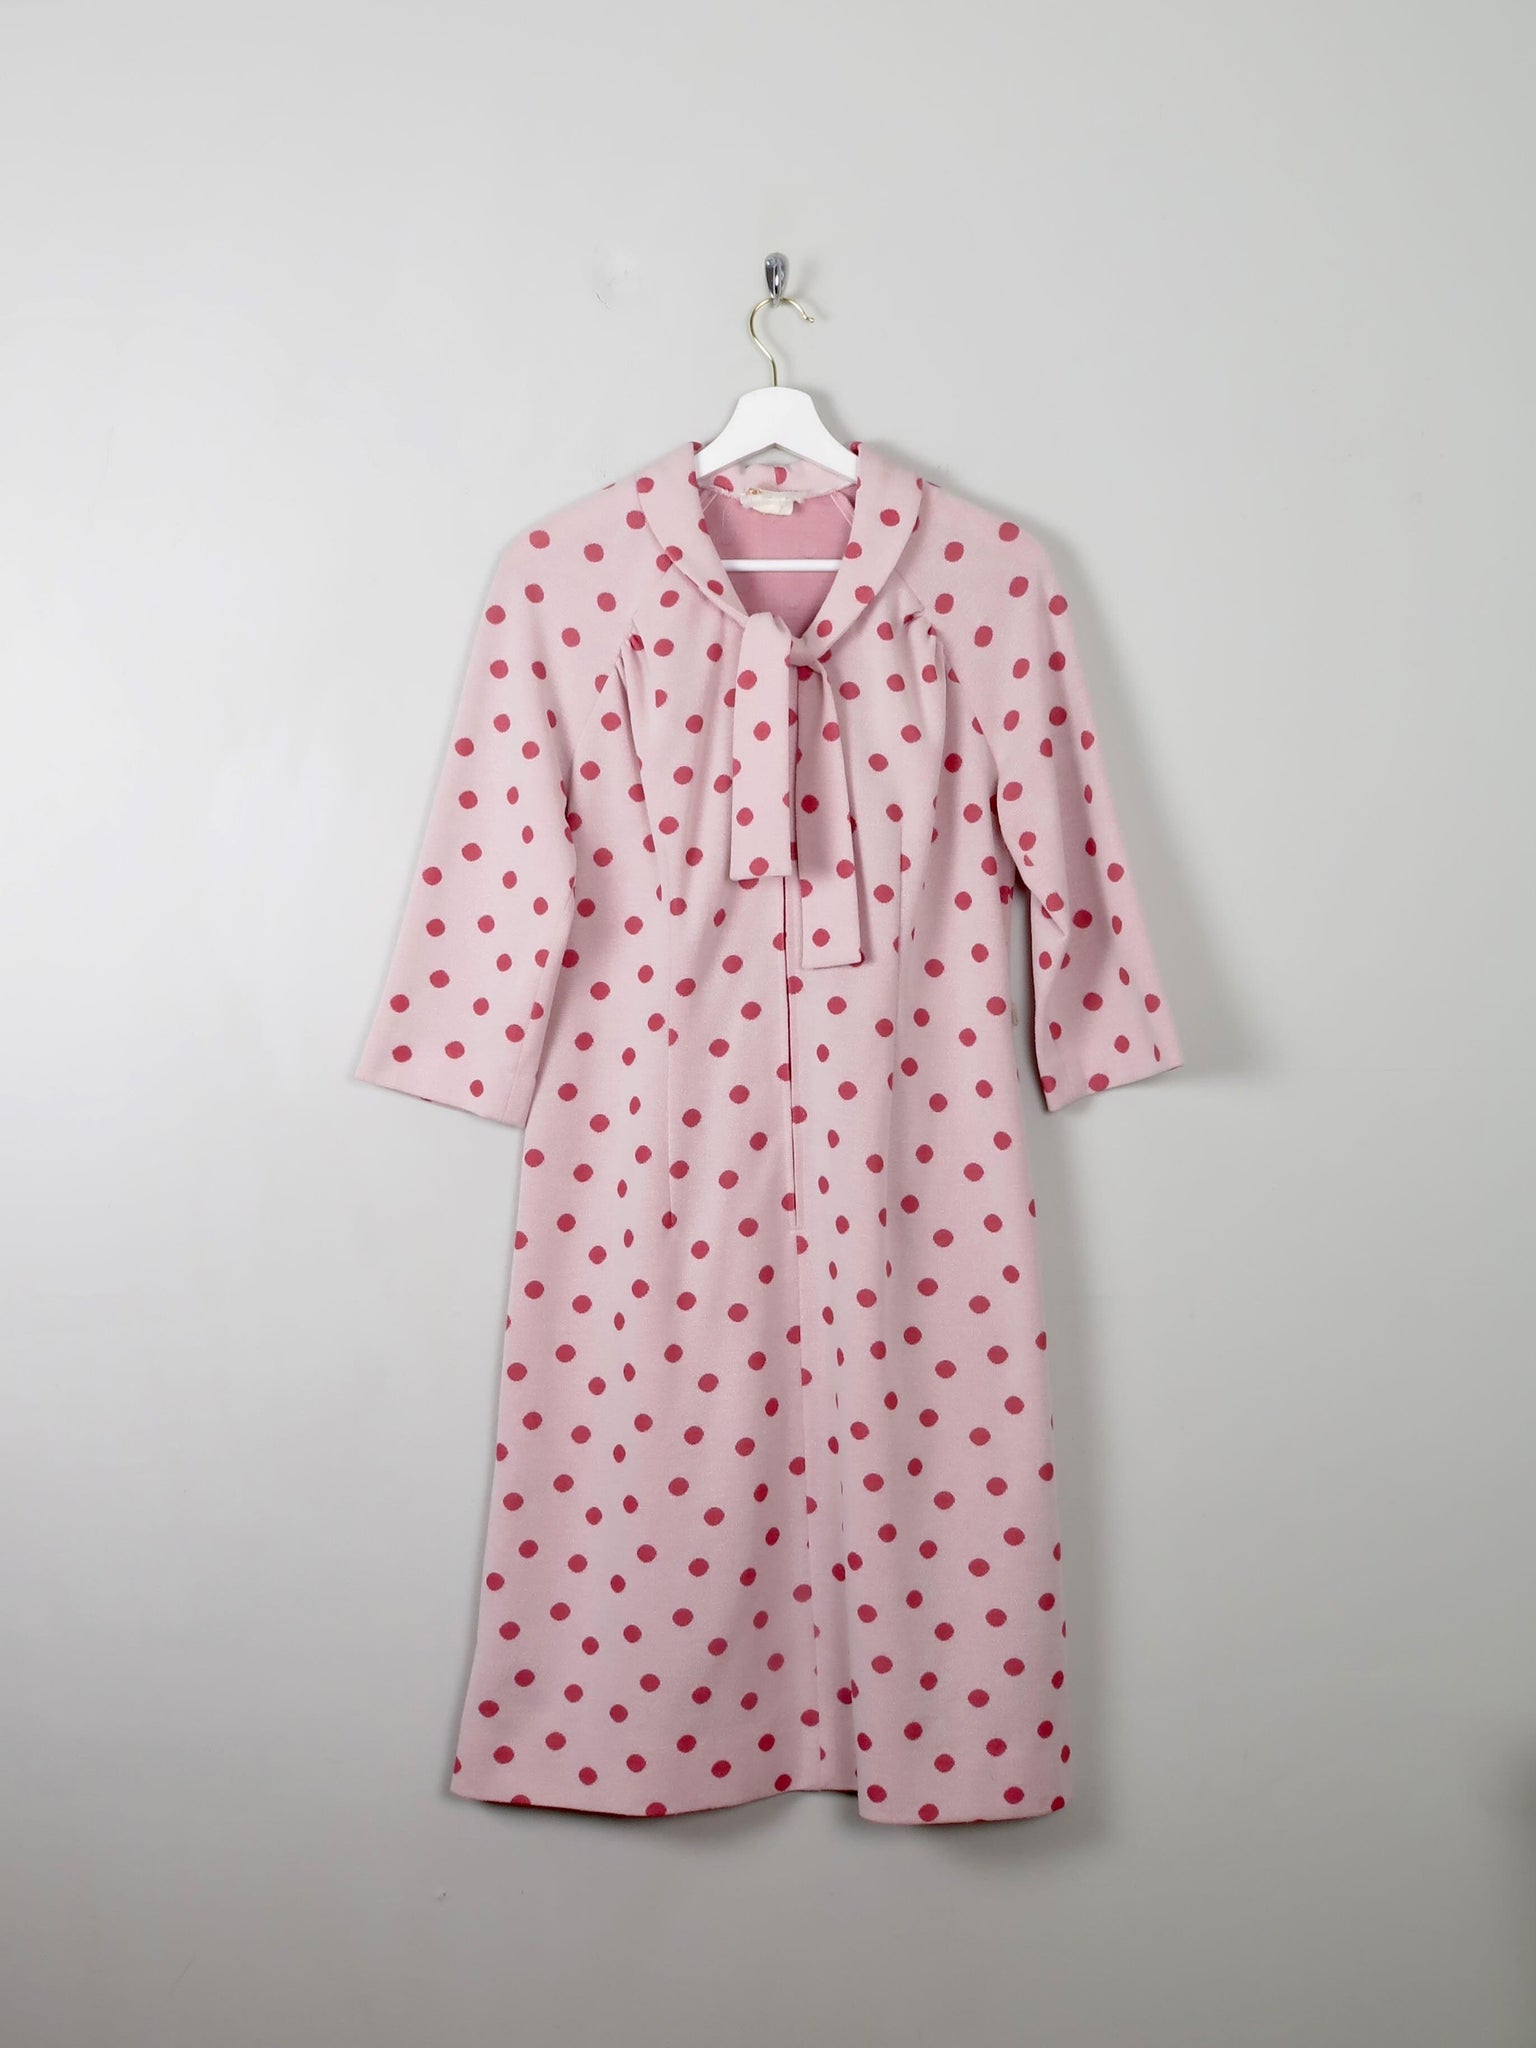 Vintage Pink Polka Dot Dress 10/12 - The Harlequin